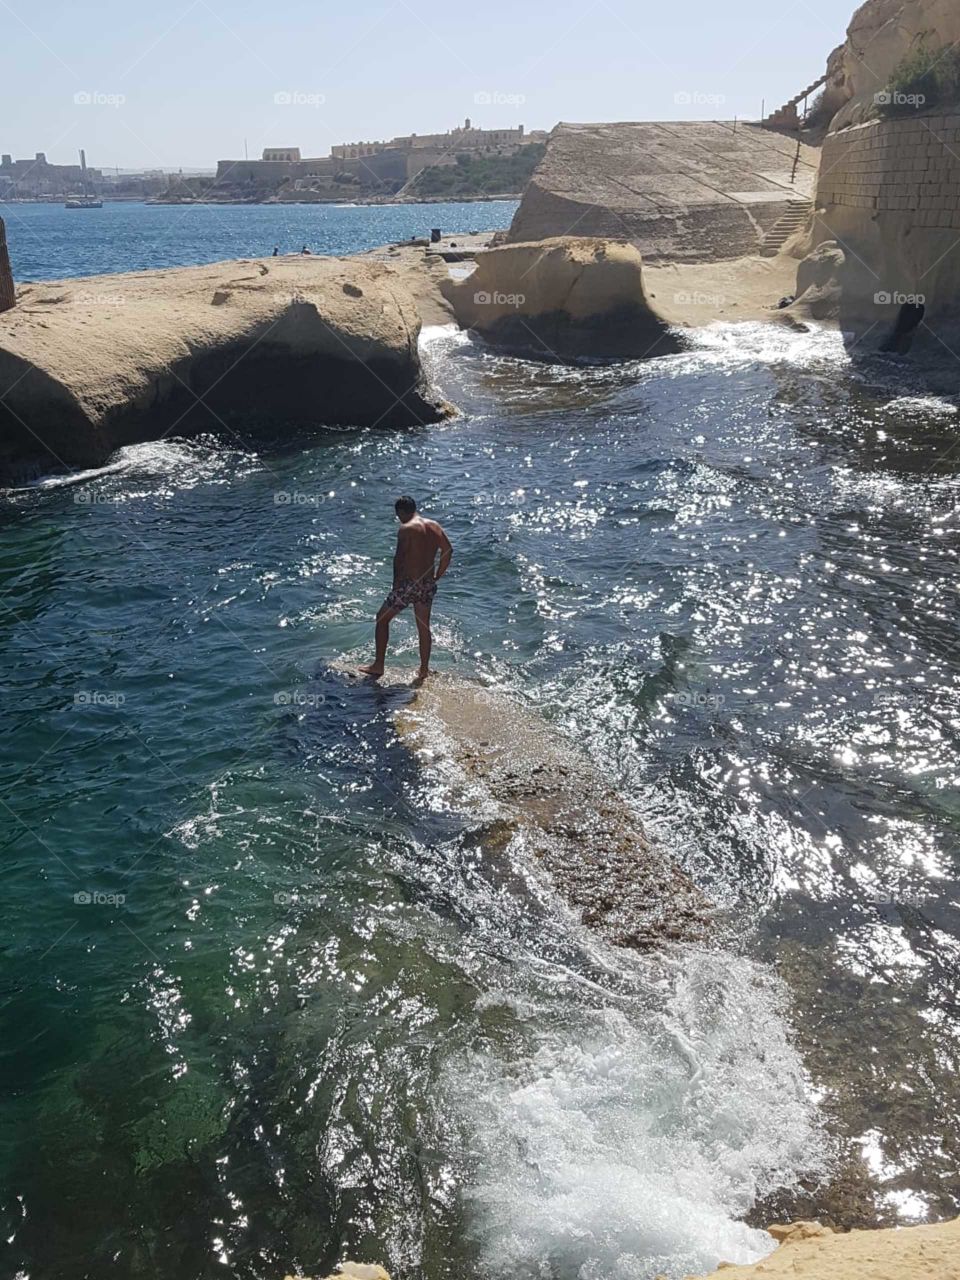 Rocks and sea in Malta